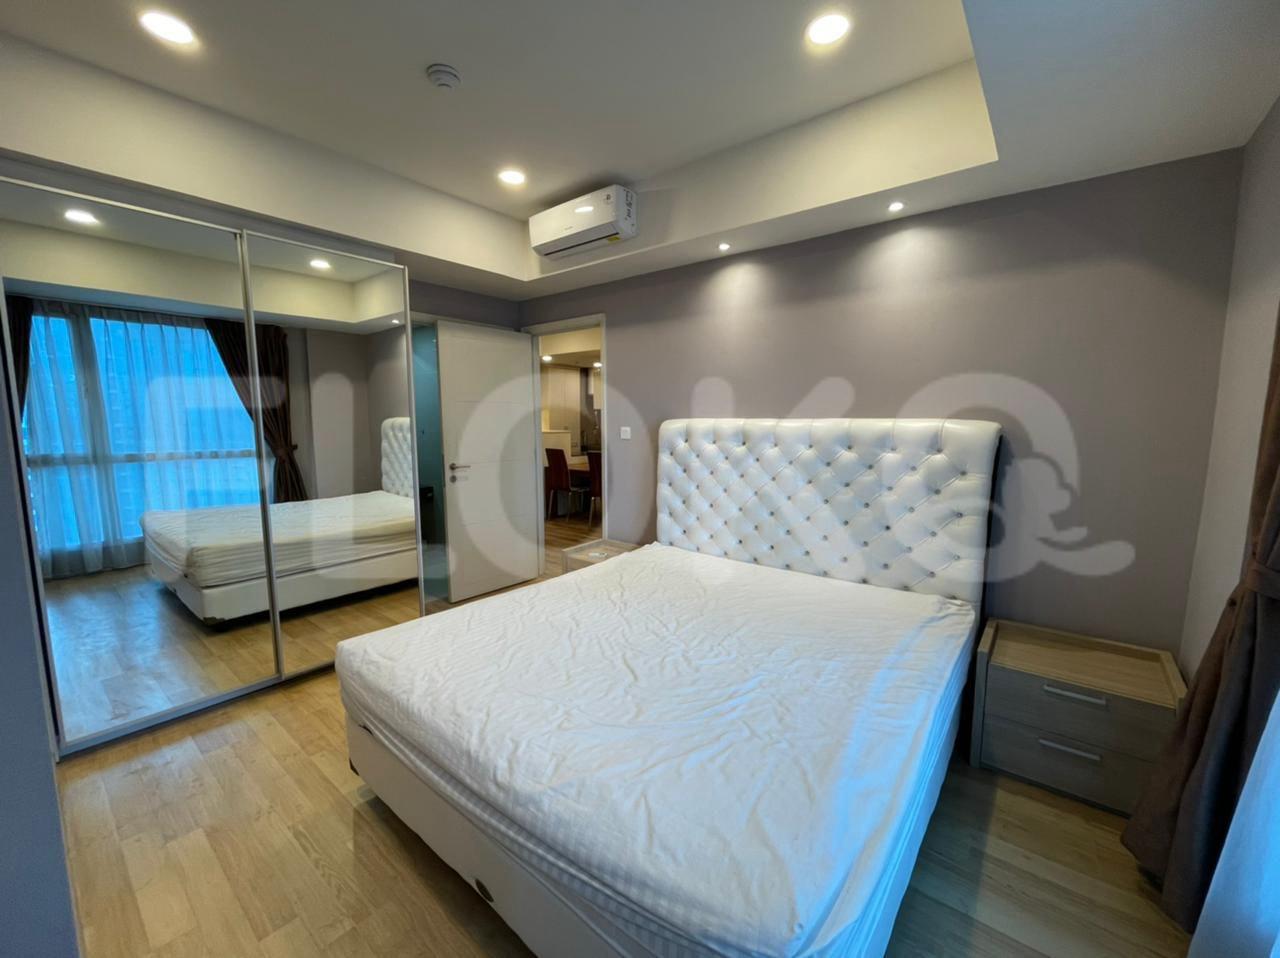 Sewa Apartemen Casa Grande Tipe 3 Kamar Tidur di Lantai 17 fte958